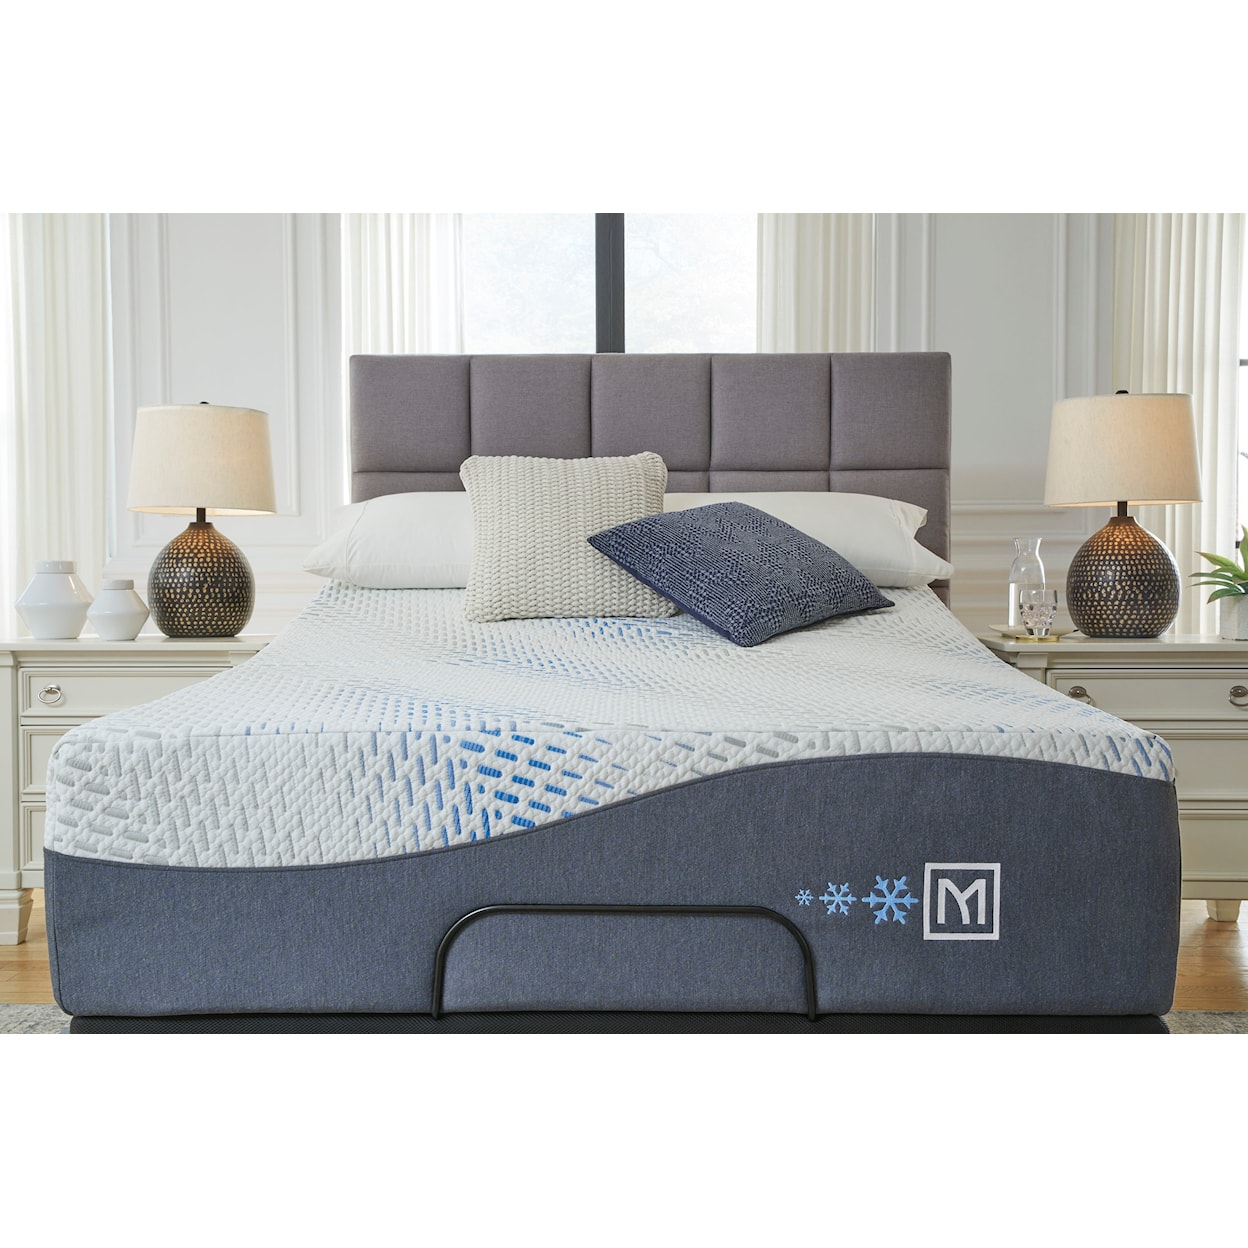 Sierra Sleep Millen. Cushion Firm Gel Memory Hybrid Memory Foam King Mattress